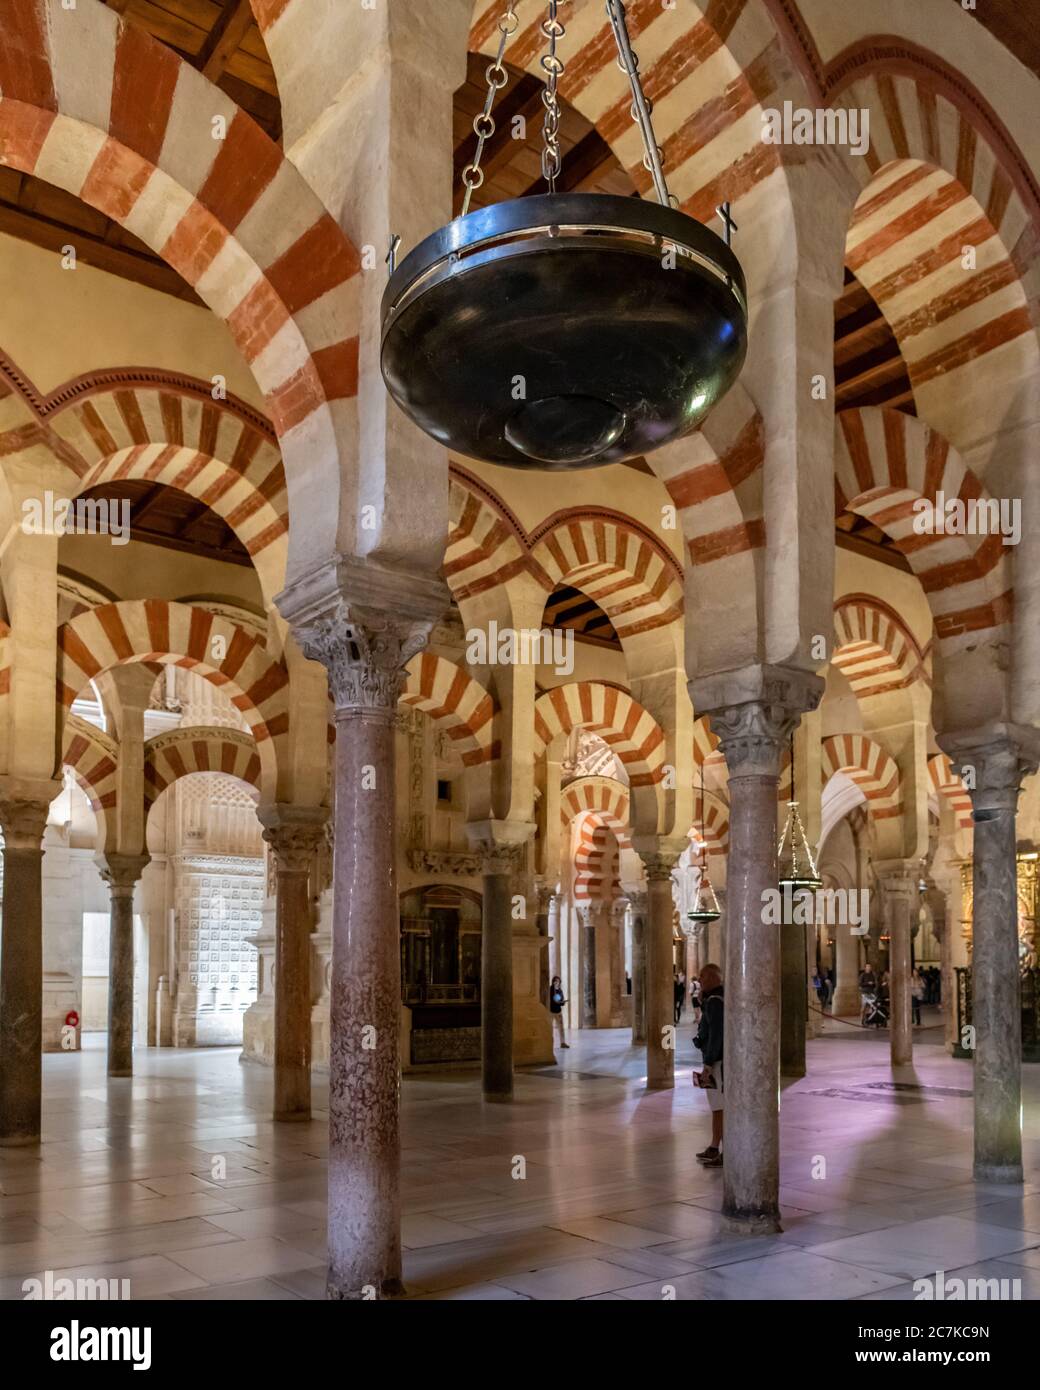 Le colonne e gli archi a doppio livello nella sezione originale della moschea-cattedrale di Cordoba Foto Stock